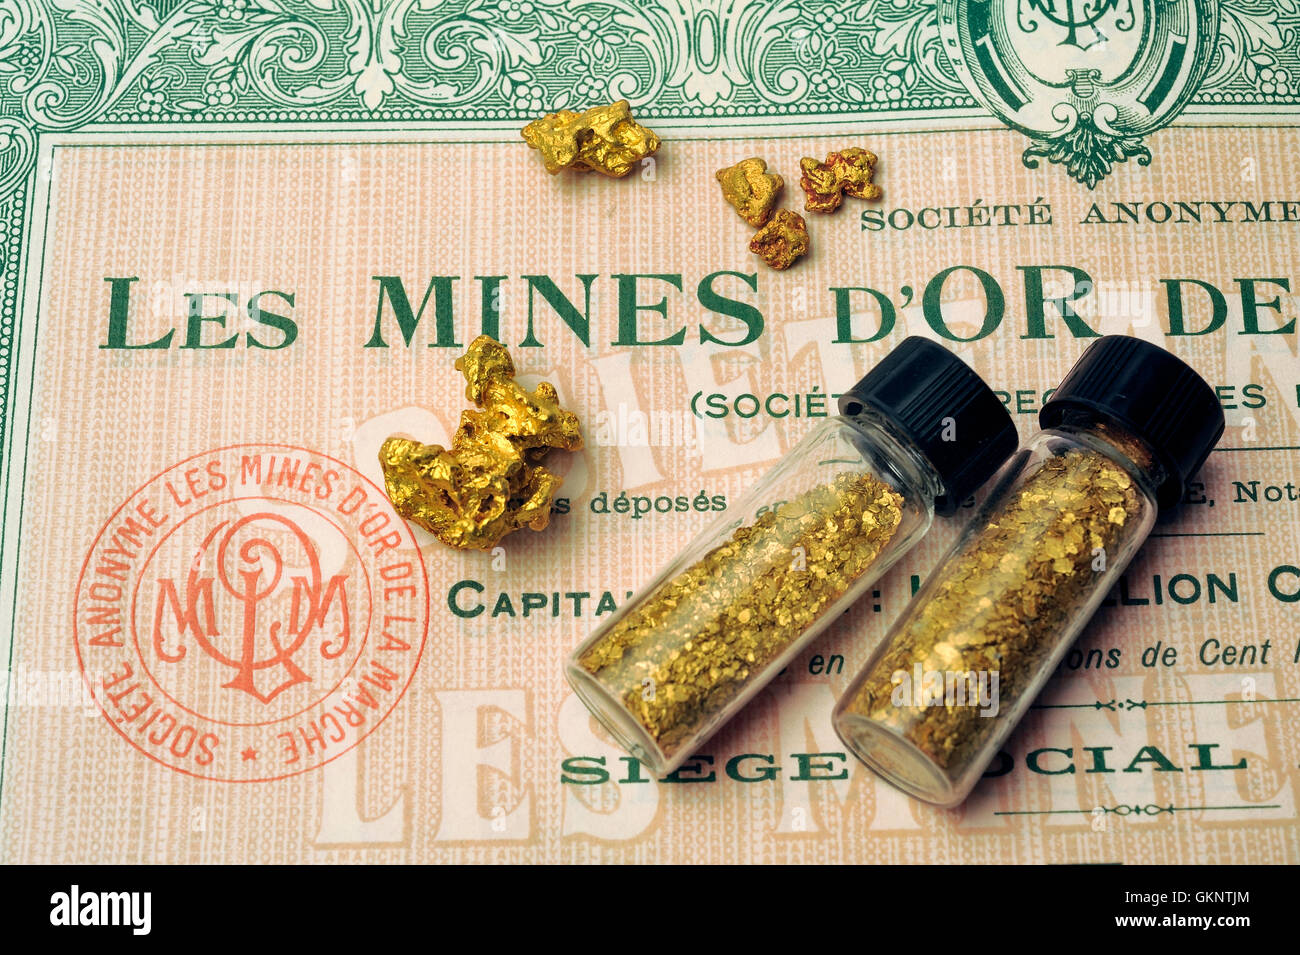 Stock sous une mine d'or française maintenant fermé depuis de nombreuses années en raison de manque de rentabilité Banque D'Images